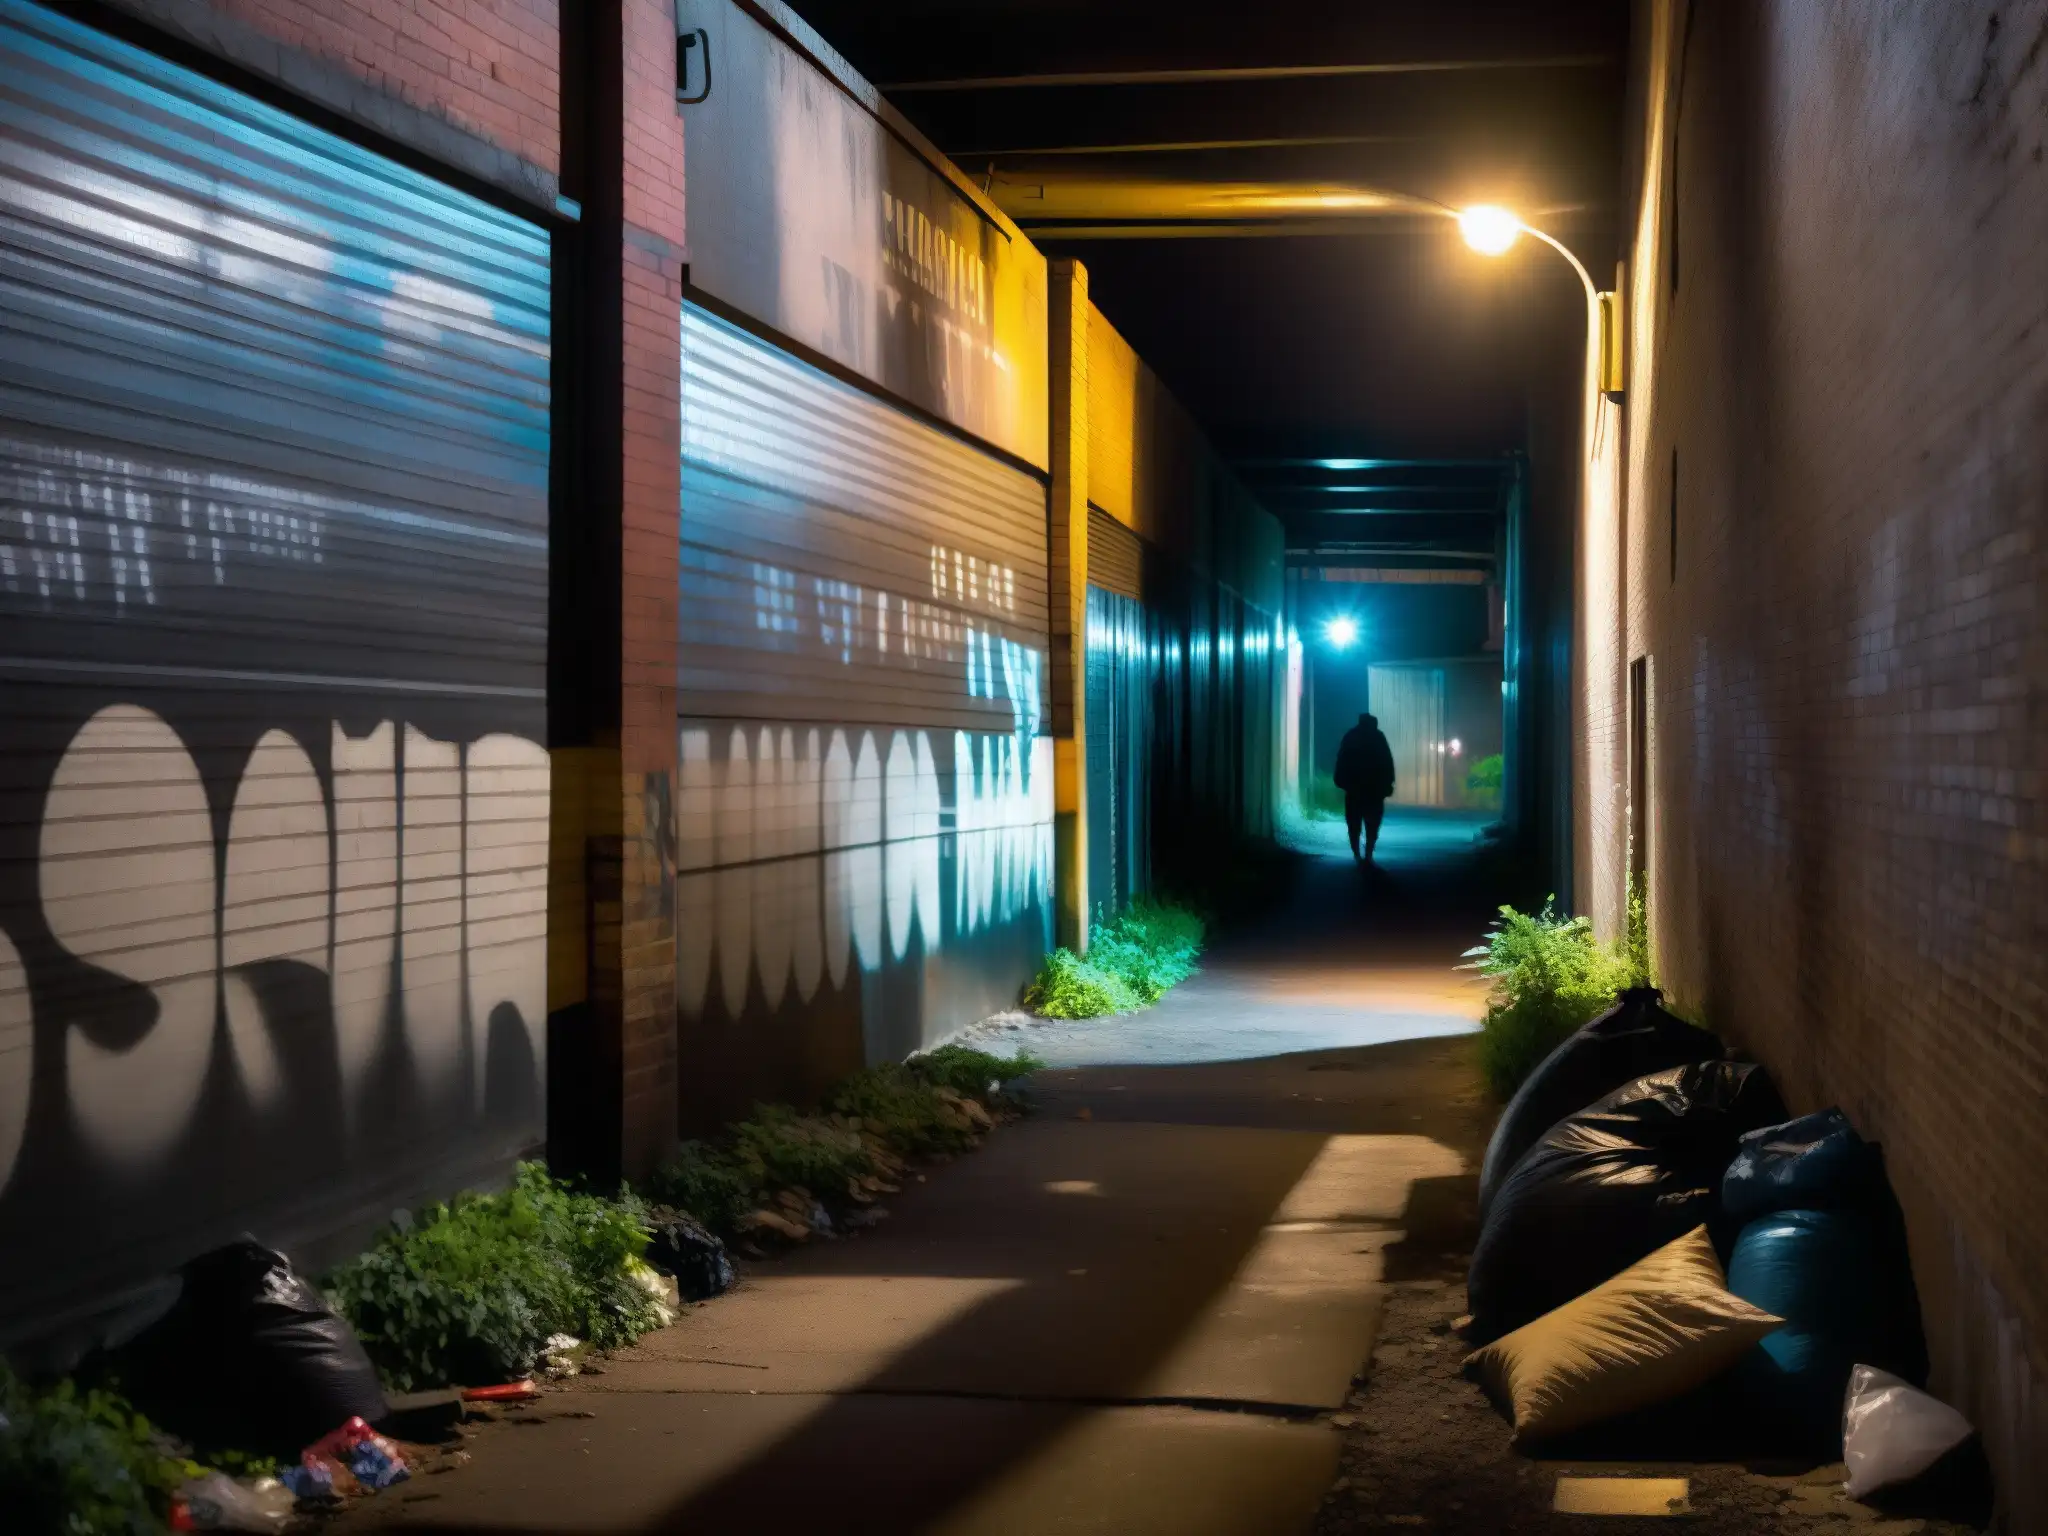 Estudio psicológico criaturas leyendas urbanas: Un callejón sombrío con grafitis, basura y una figura misteriosa en la penumbra